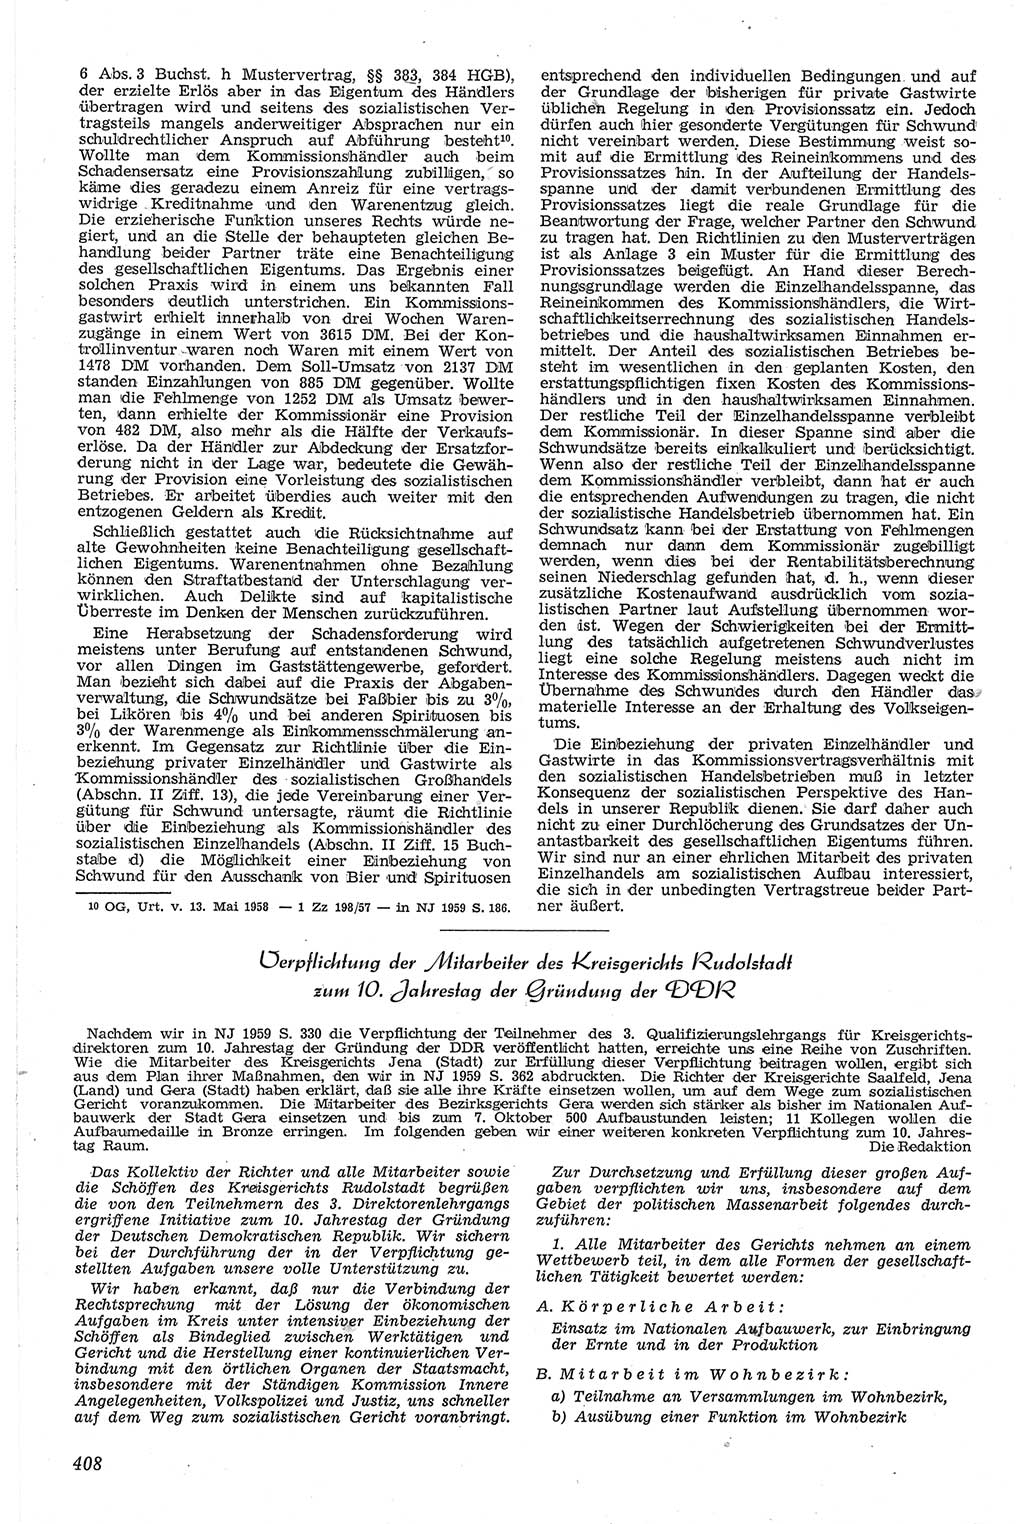 Neue Justiz (NJ), Zeitschrift für Recht und Rechtswissenschaft [Deutsche Demokratische Republik (DDR)], 13. Jahrgang 1959, Seite 408 (NJ DDR 1959, S. 408)